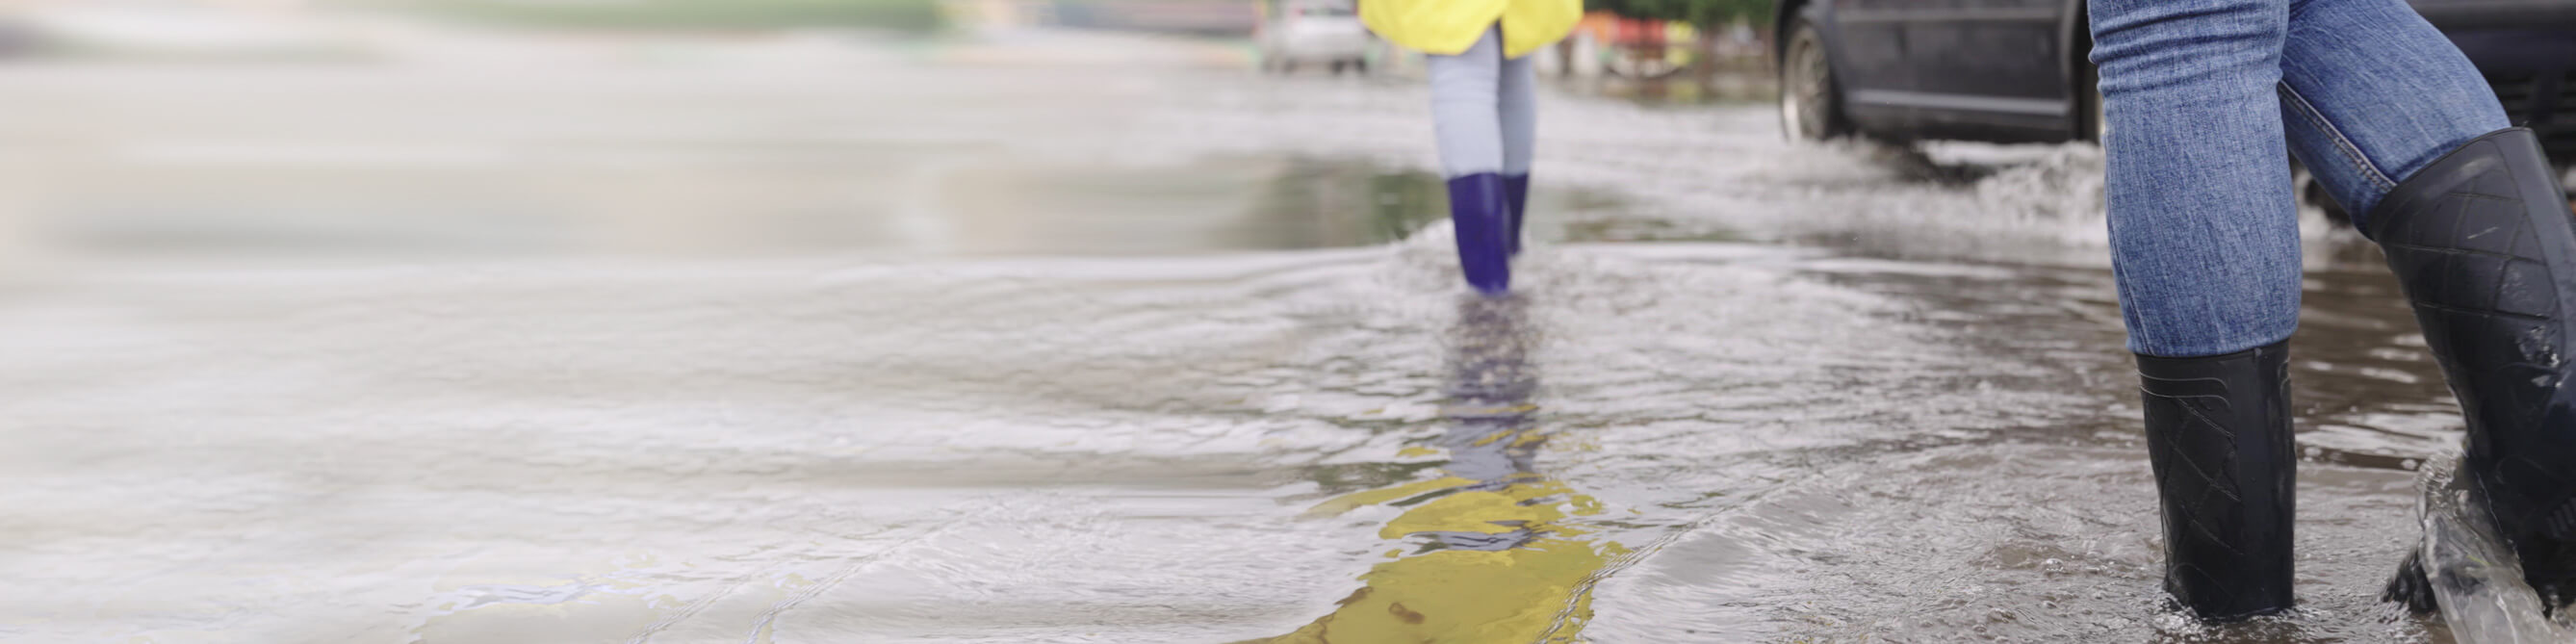 Frauen in Gummistiefeln auf überschwemmter Straße